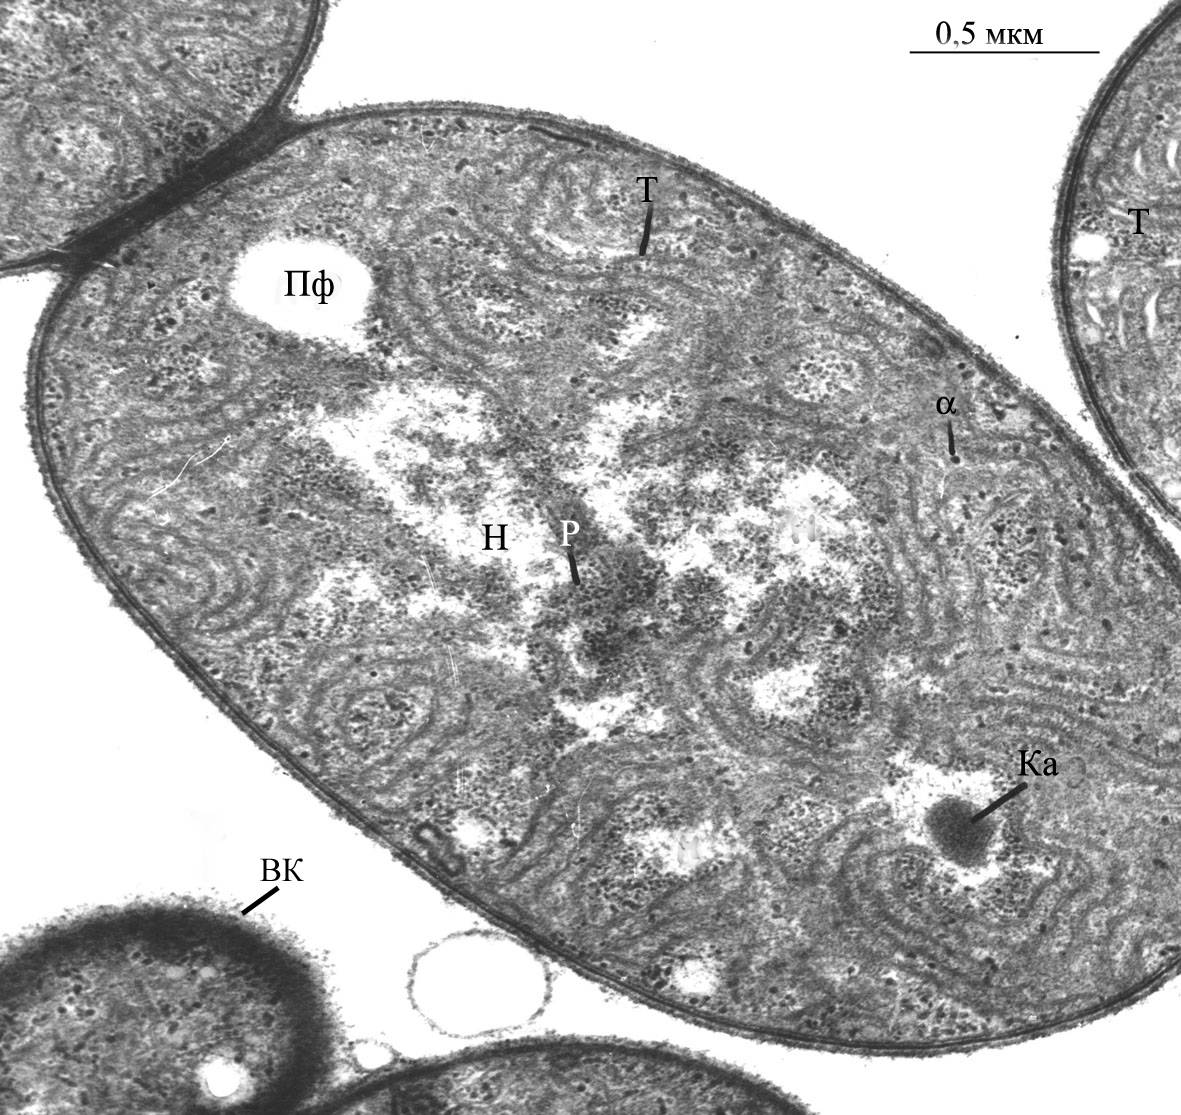  Фрагмент клетки  цианобактерии  нм - наружная мембрана, цпм - цитоплазматическая мембрана, КС -  клеточная стенка, Пг - пептидогликан,  (трансмиссионная элеткронная микроскопия, фото Баулиной О.И.). , (США)